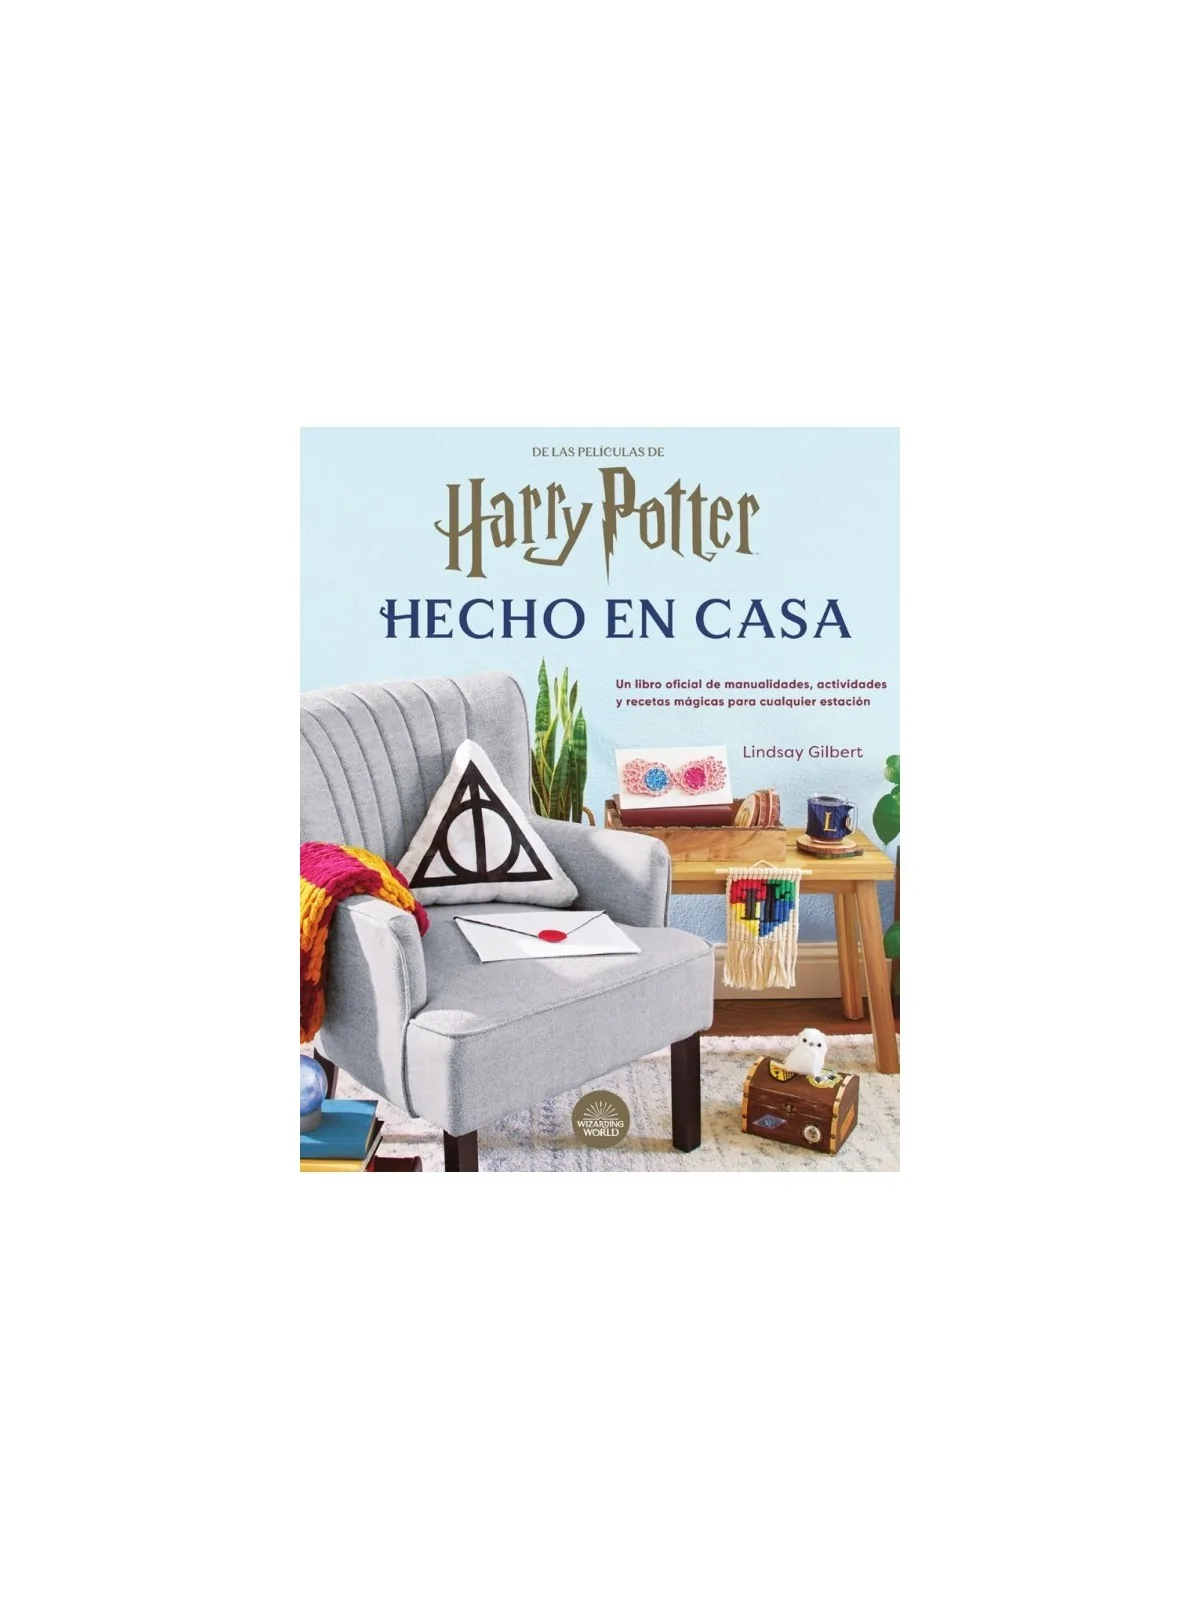 Comprar Harry Potter: Hecho en Casa barato al mejor precio 34,20 € de 